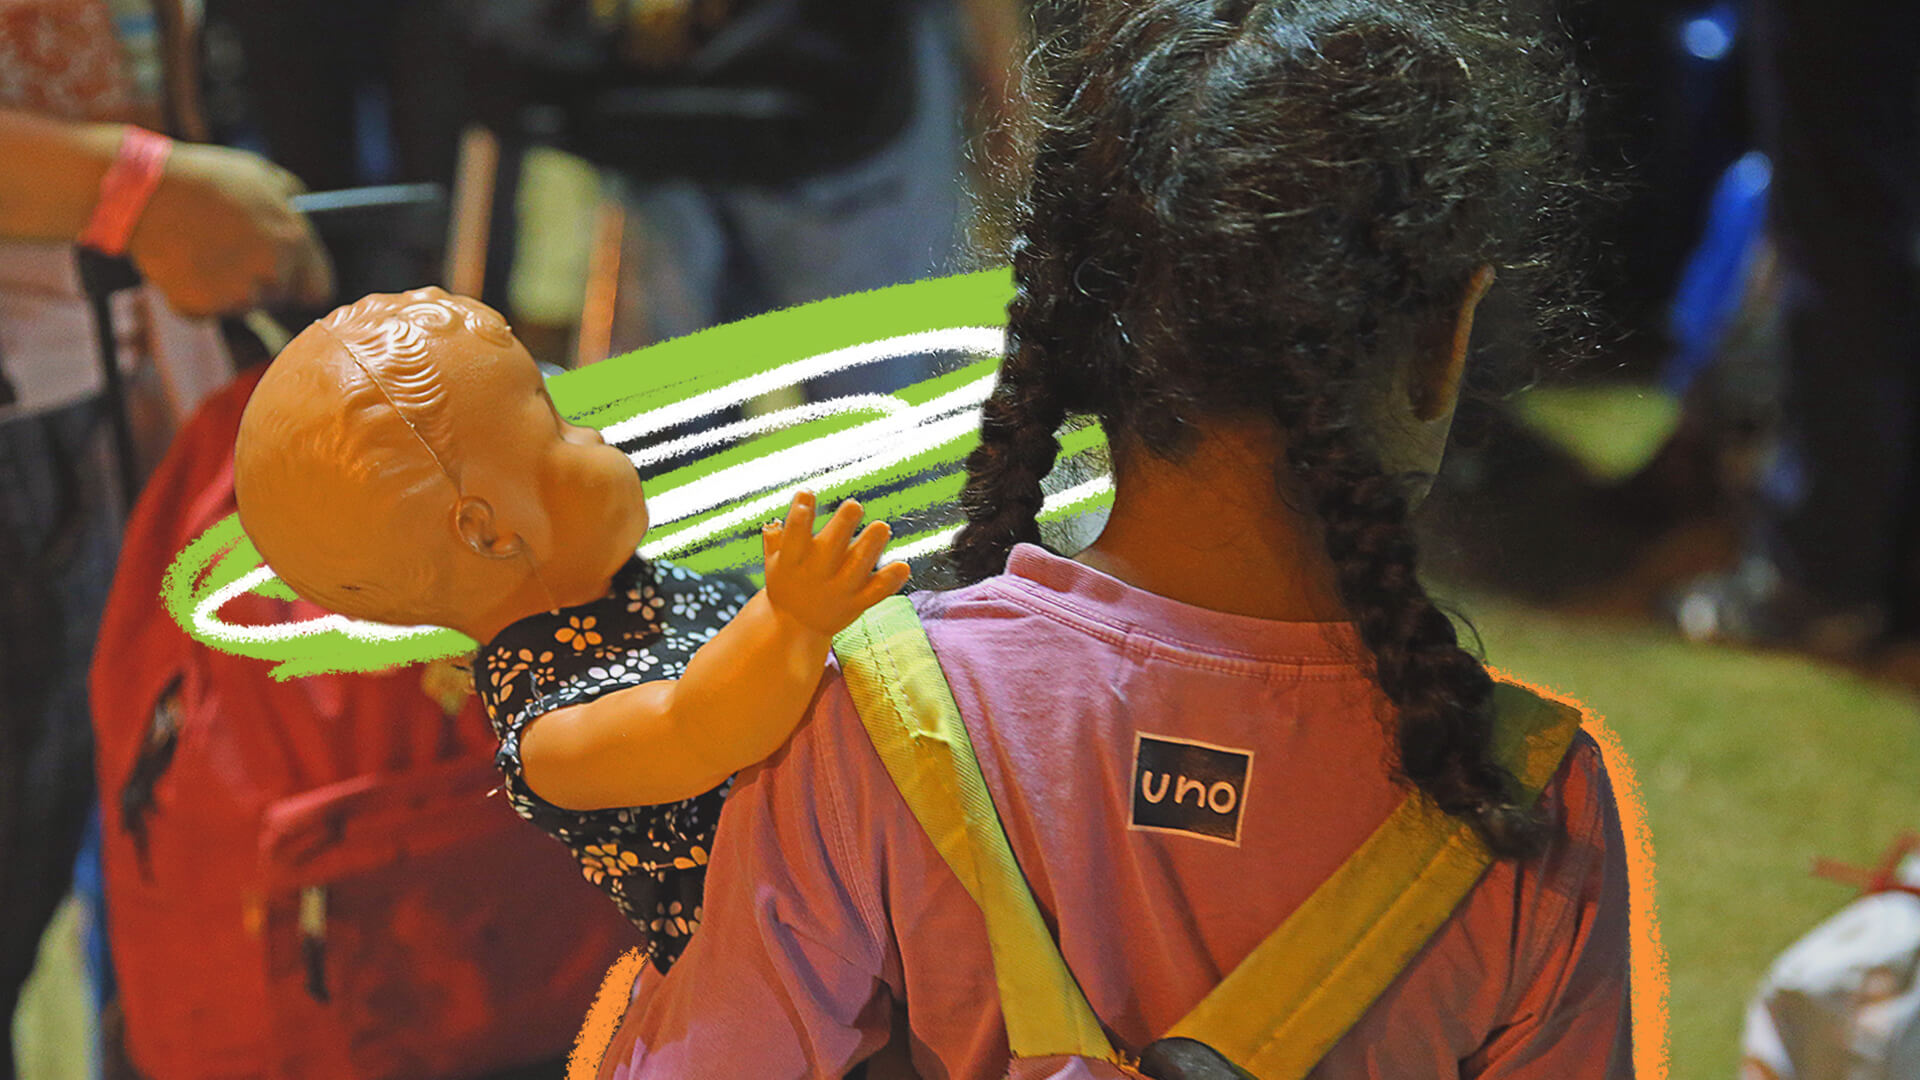 De costas, uma criança com cabelos negros trançados, usa camiseta rosa e uma mochila, e segura uma boneca de plástico com vestido florido no braço esquerdo.